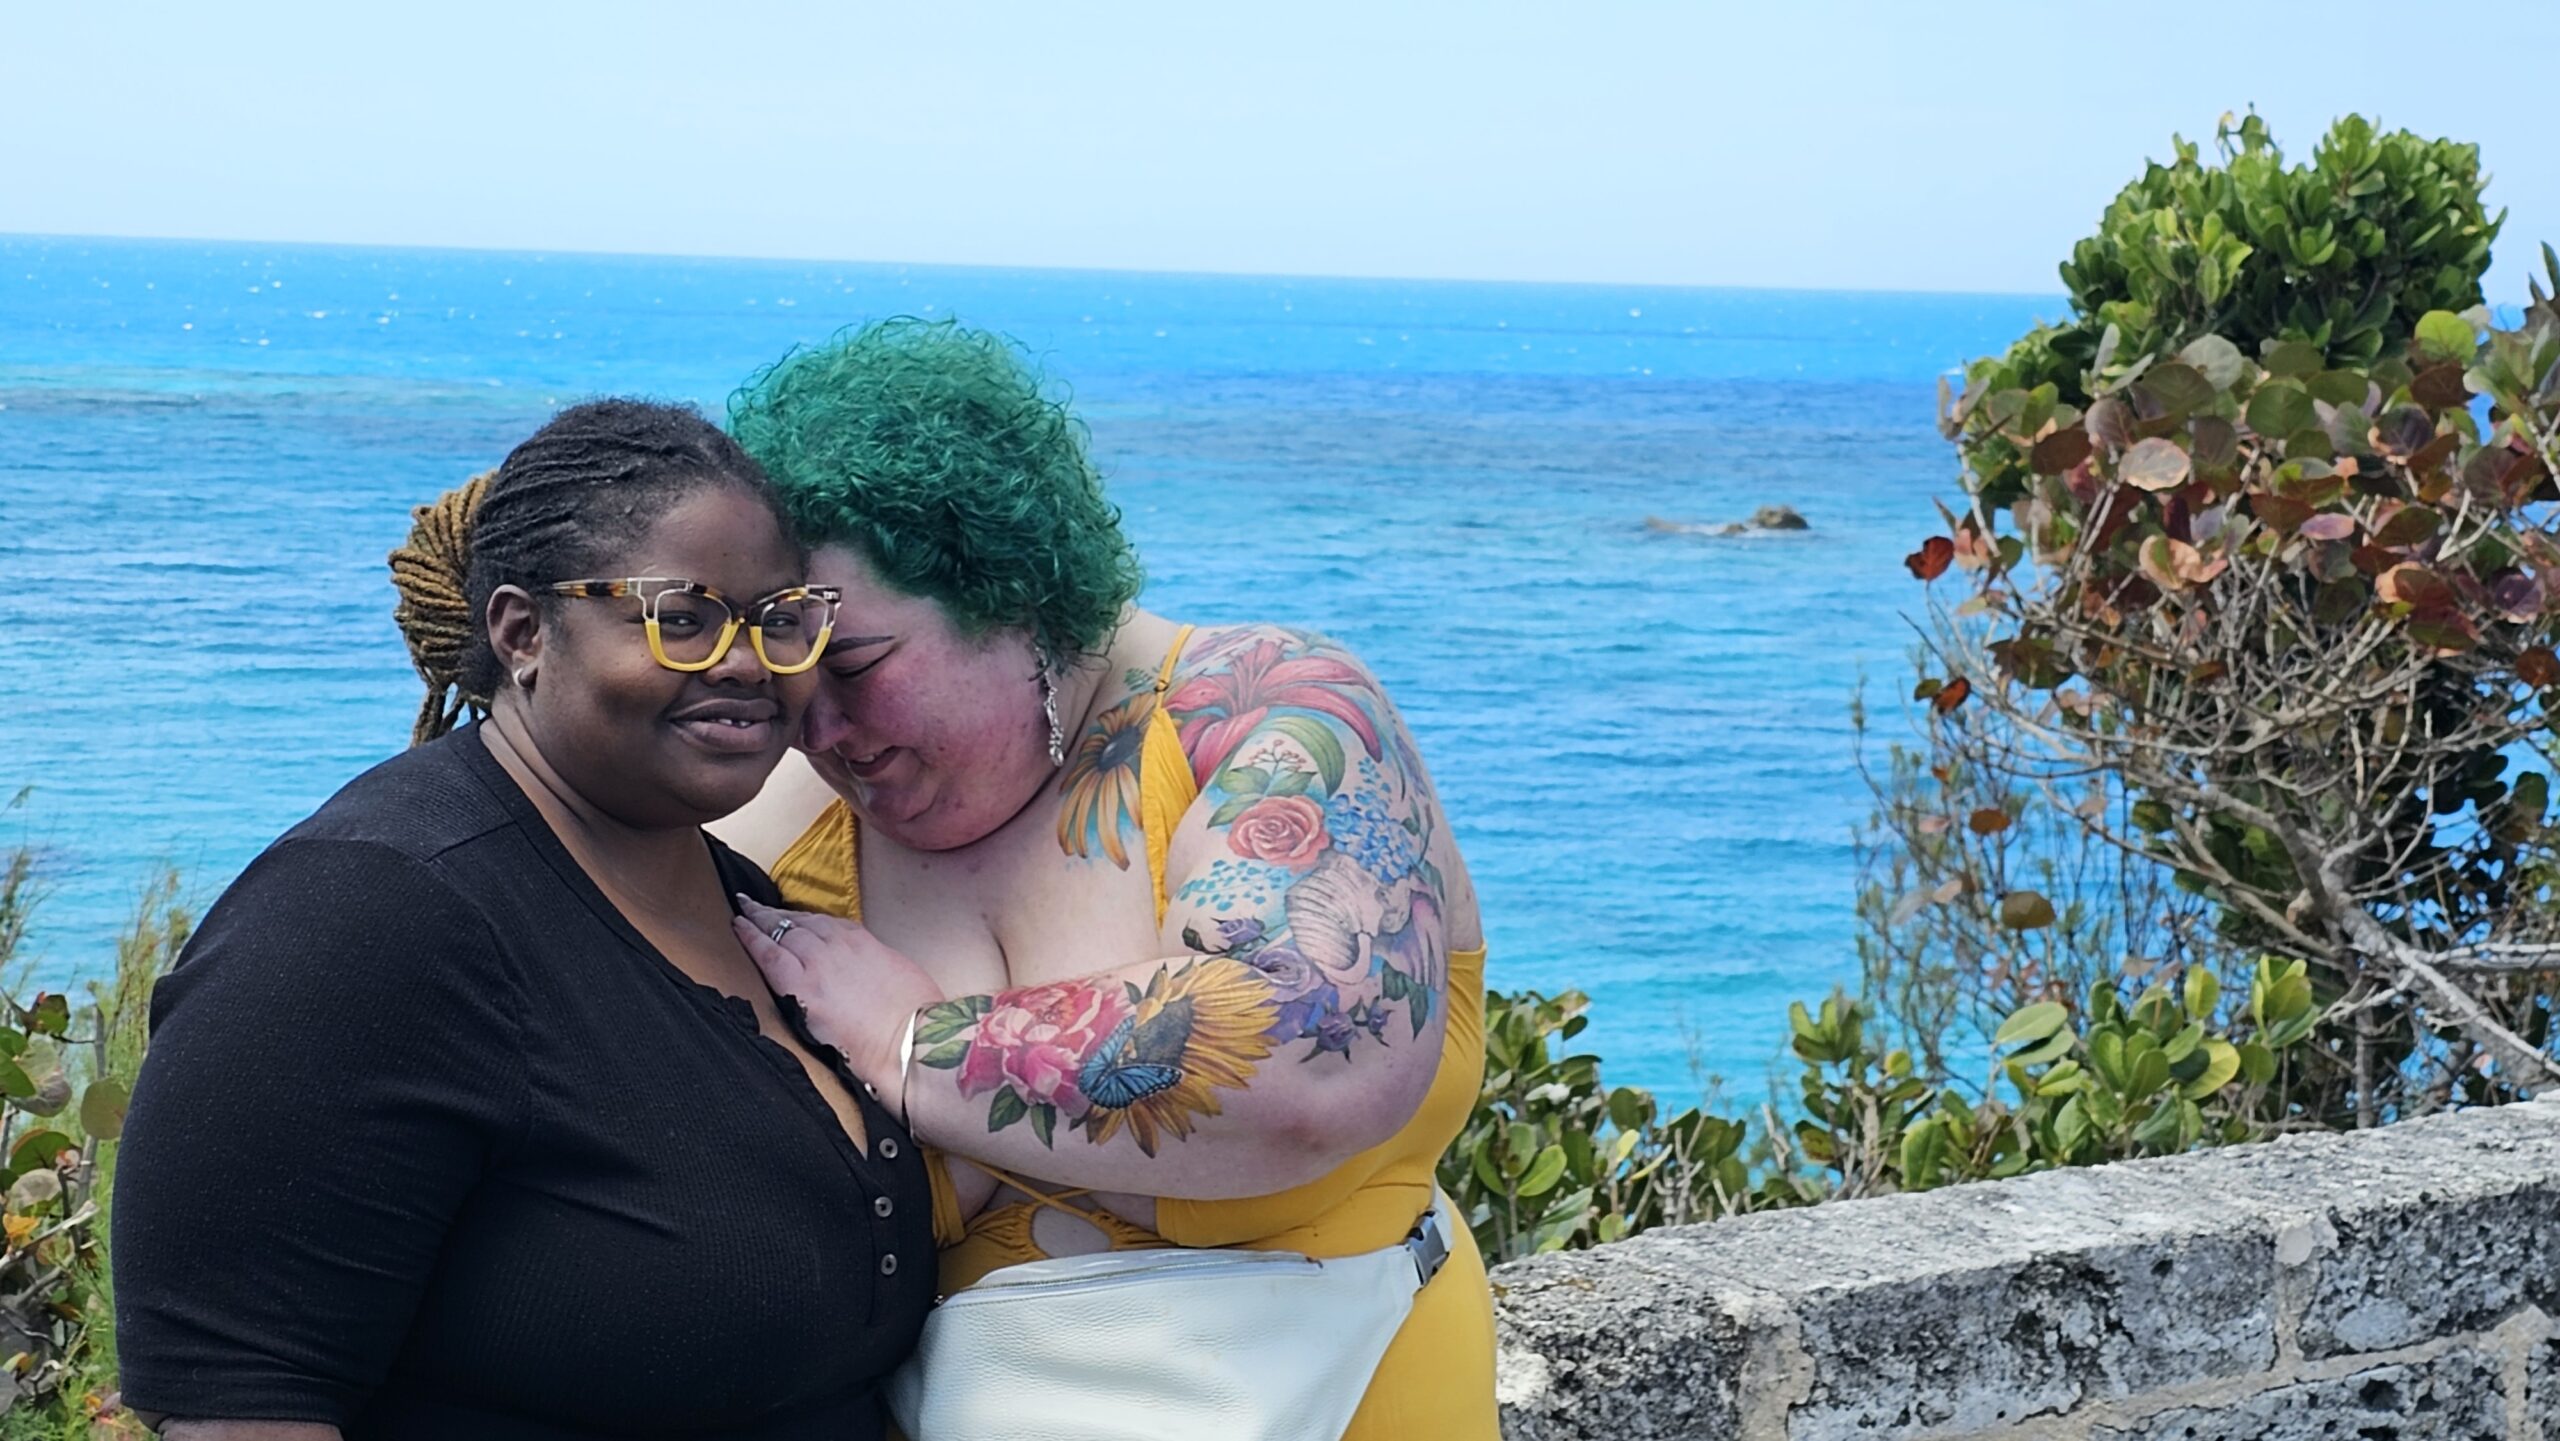 Chaya Milchtein (right) with her wife, Jodyann Morgan (left) in Bermuda (Photo Credit: Chaya Milchtein)